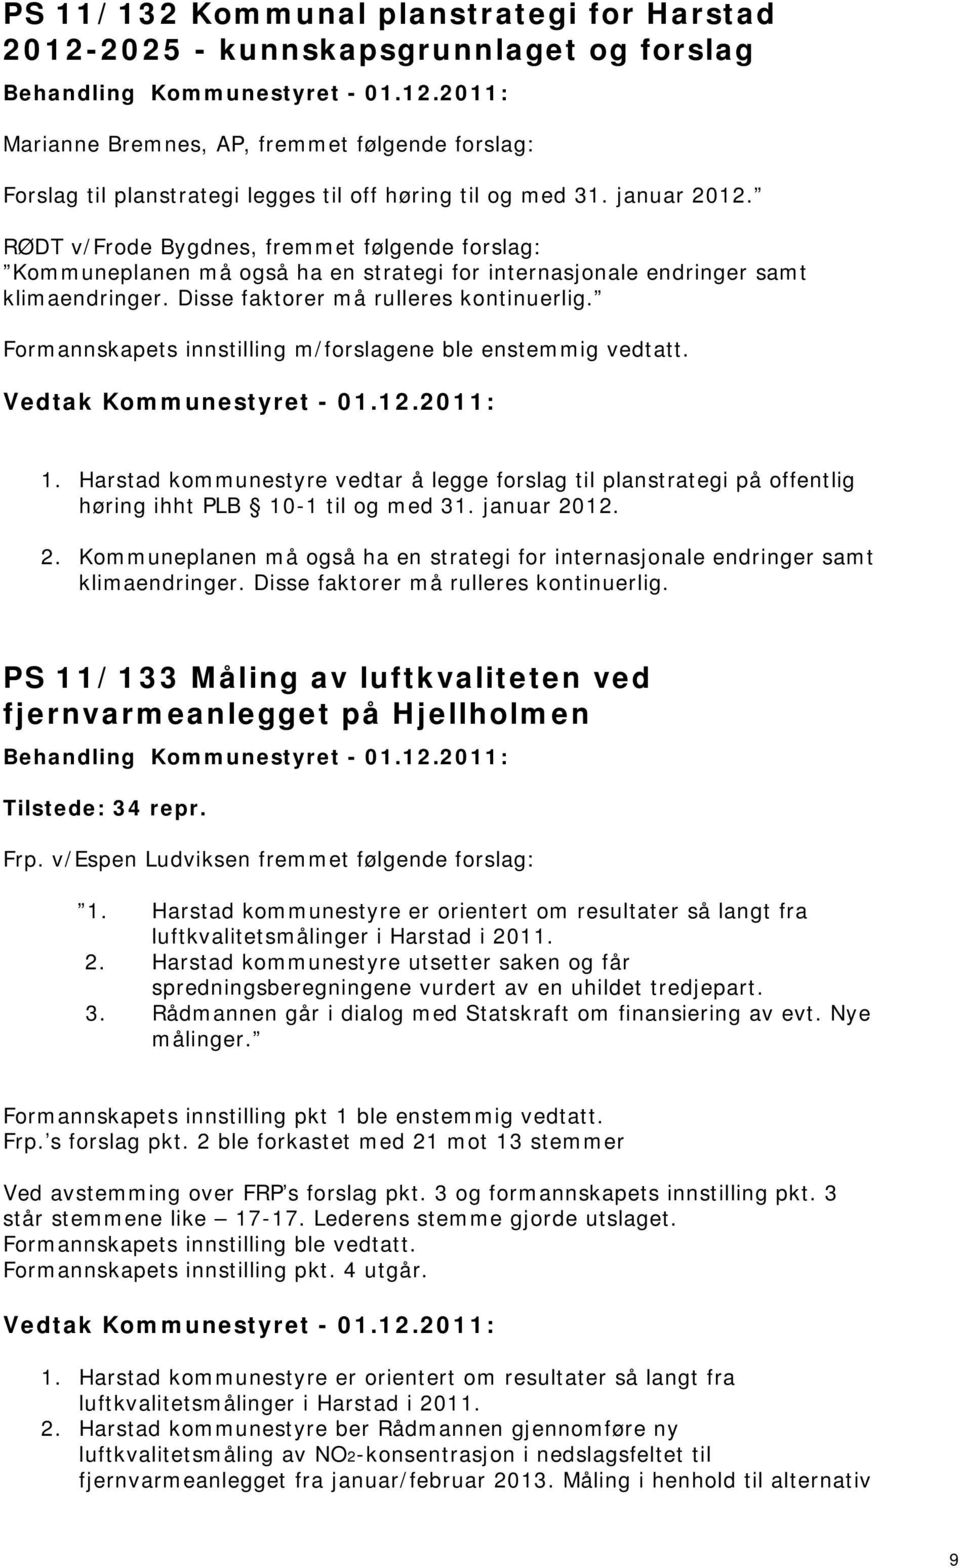 Formannskapets innstilling m/forslagene ble enstemmig vedtatt. 1. Harstad kommunestyre vedtar å legge forslag til planstrategi på offentlig høring ihht PLB 10-1 til og med 31. januar 20